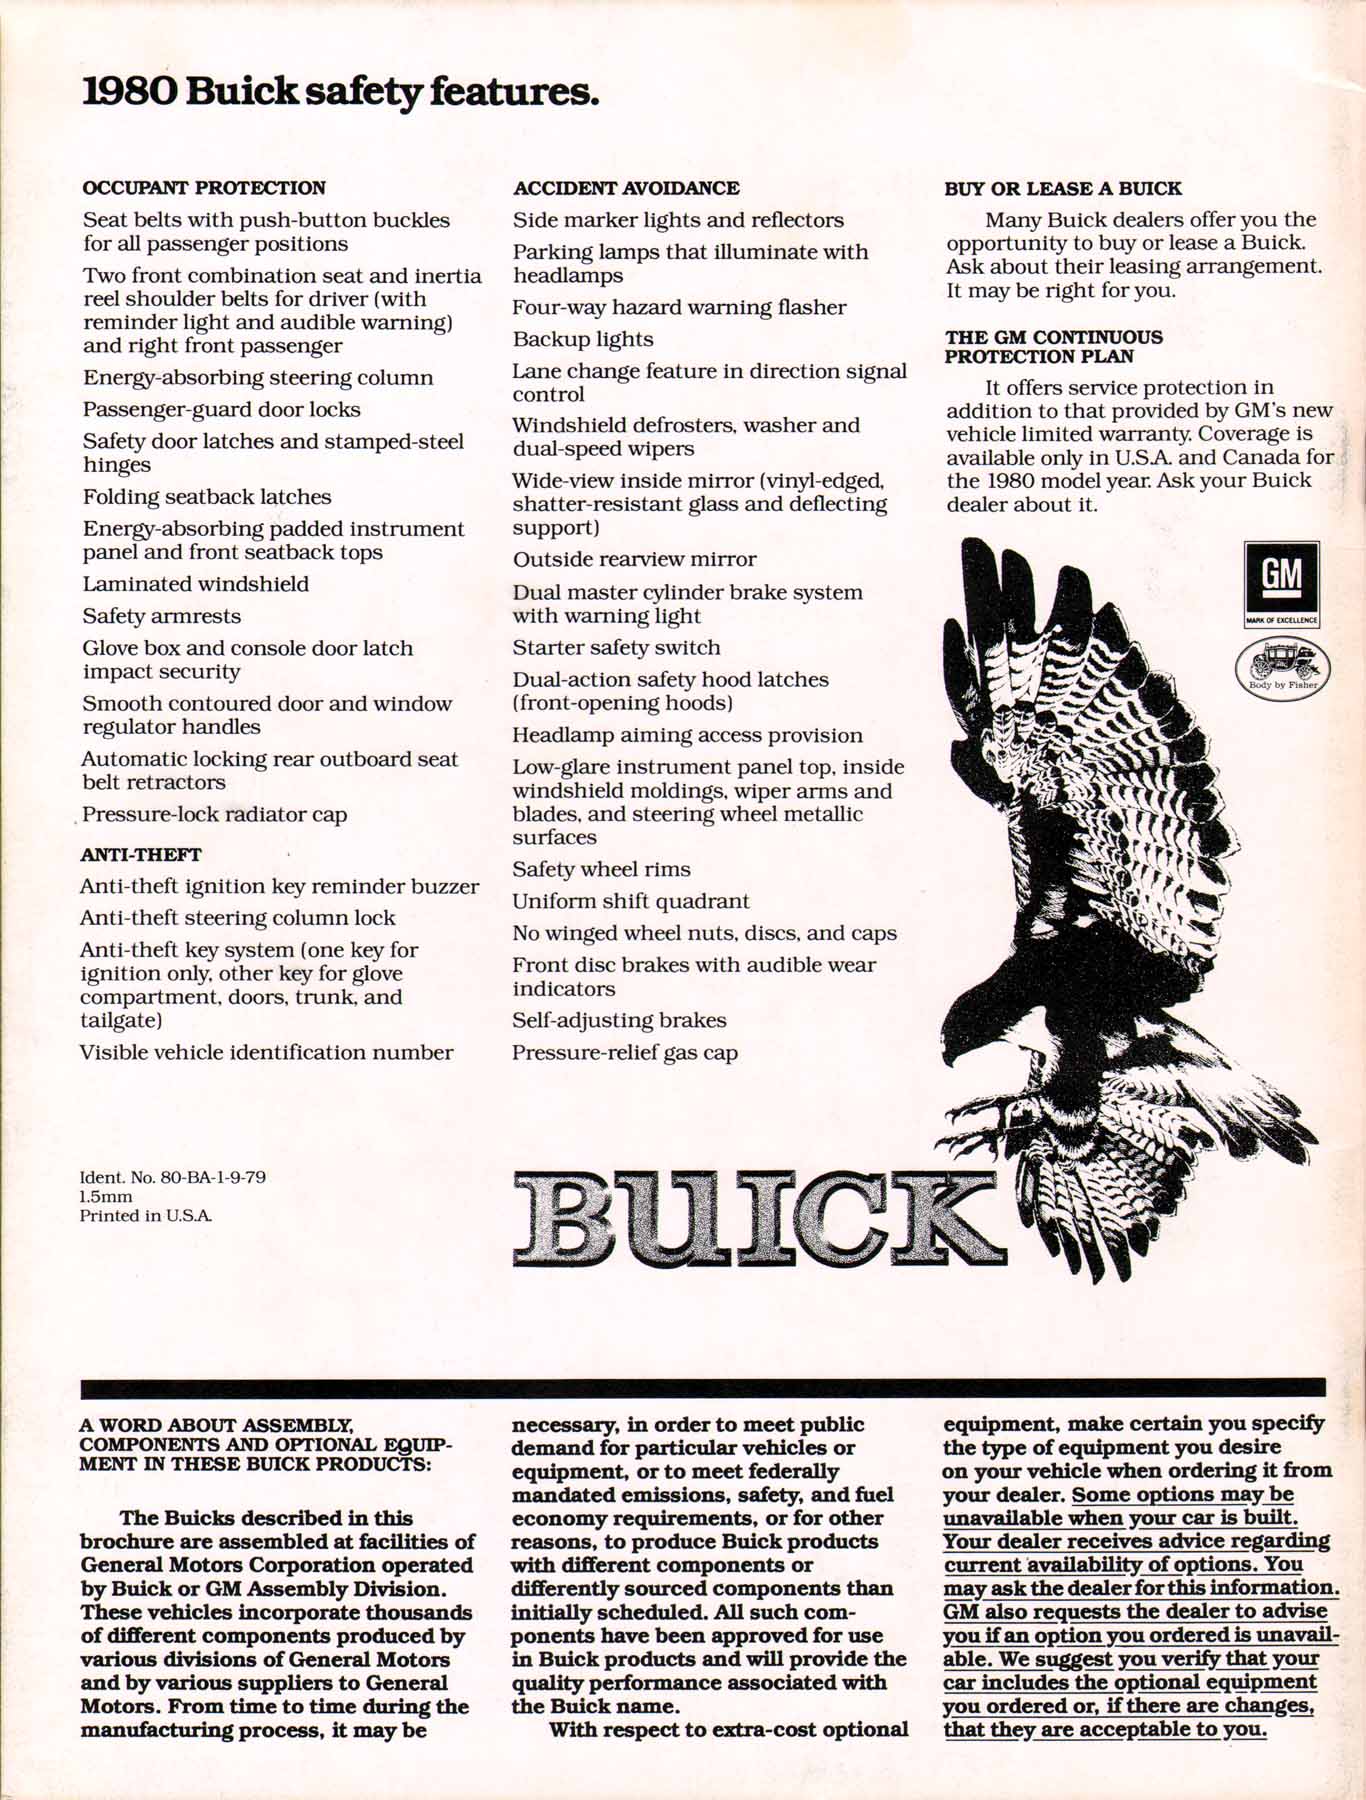 1980 Buick Full Line Prestige-76